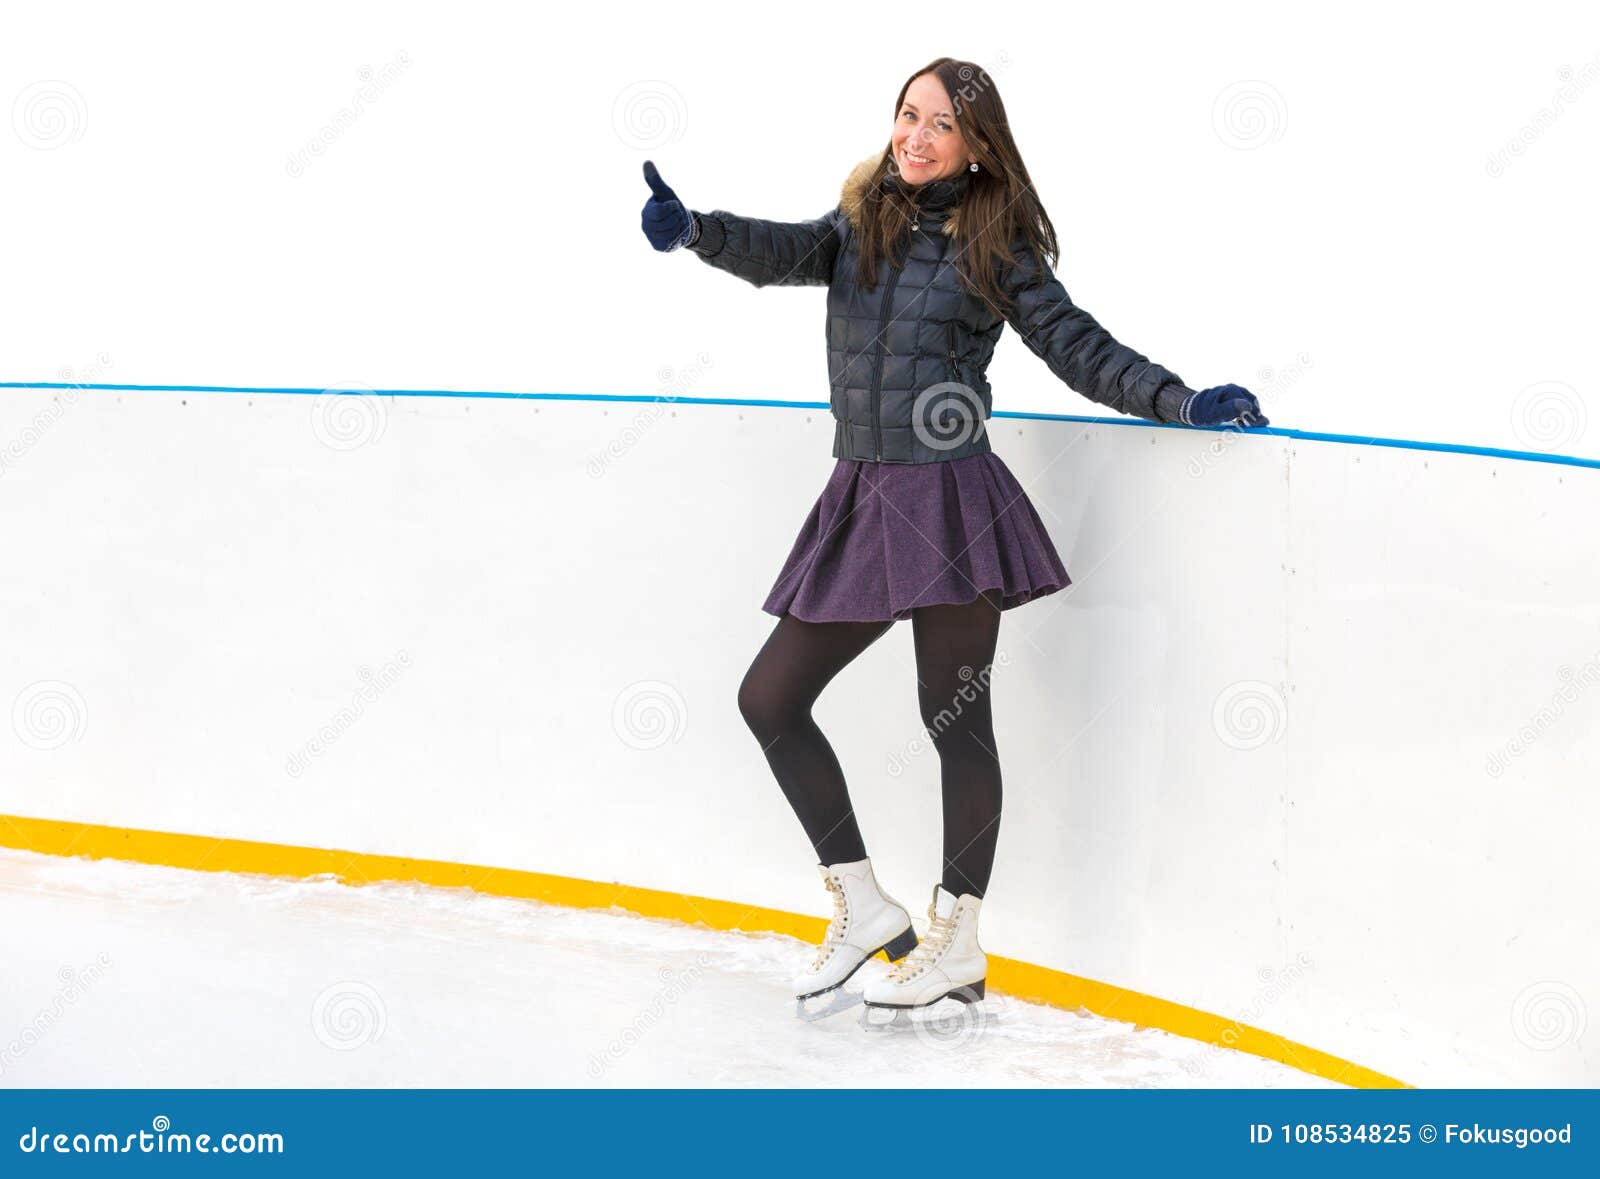 溜冰场溜冰的美女运动人物-千叶网